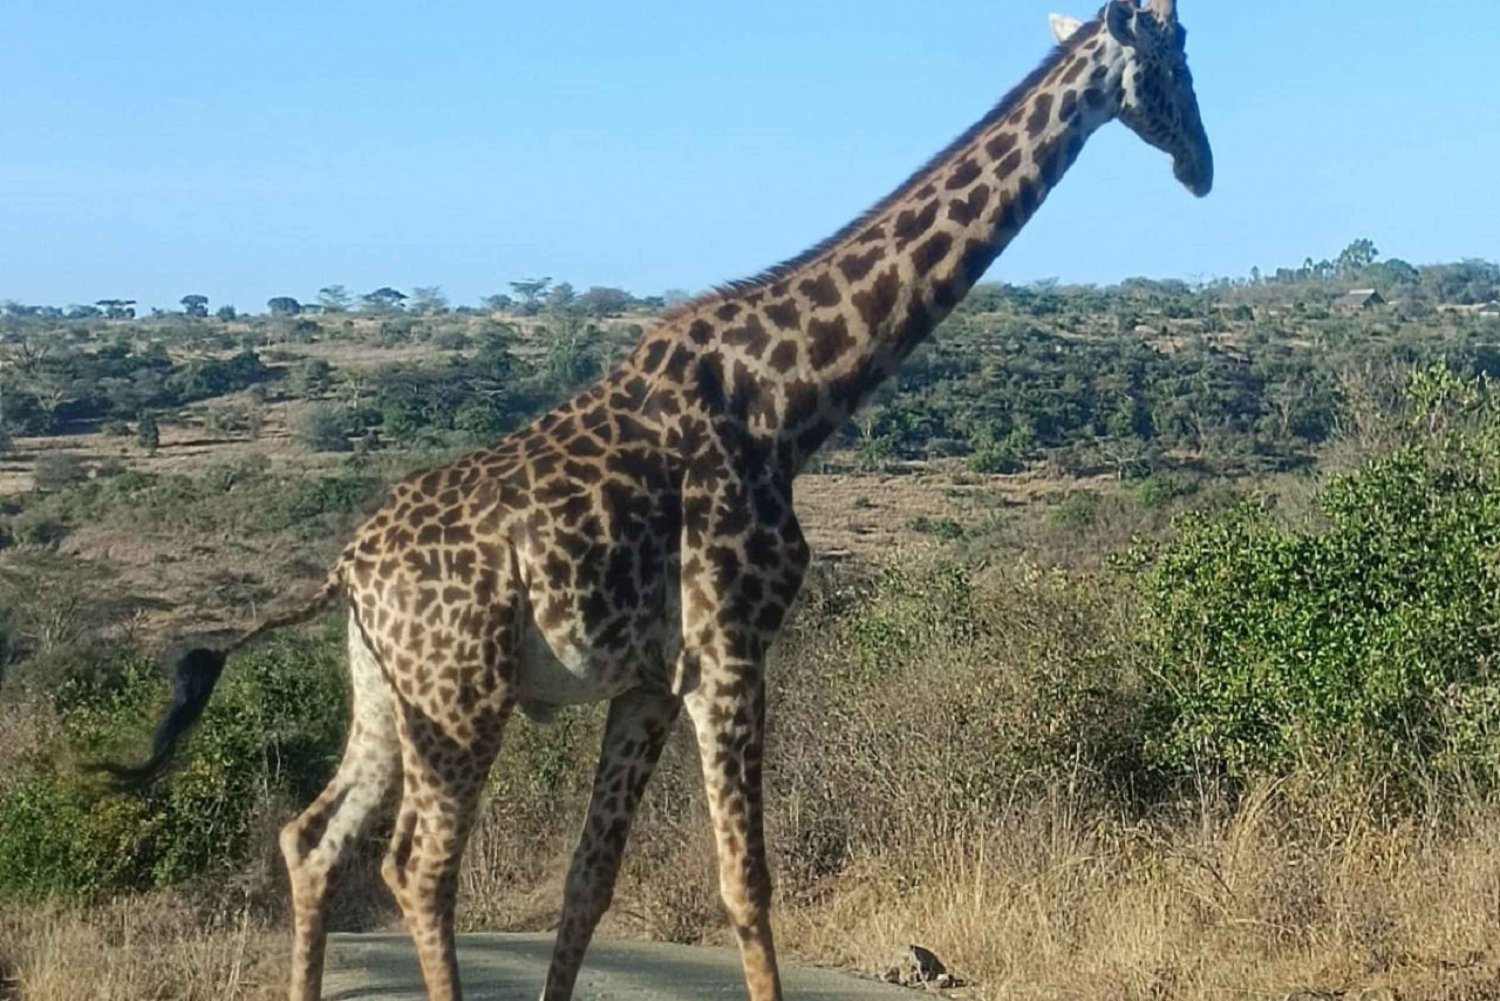 Nairobi National Park, Giraffe Center & Karen Blixen Museum